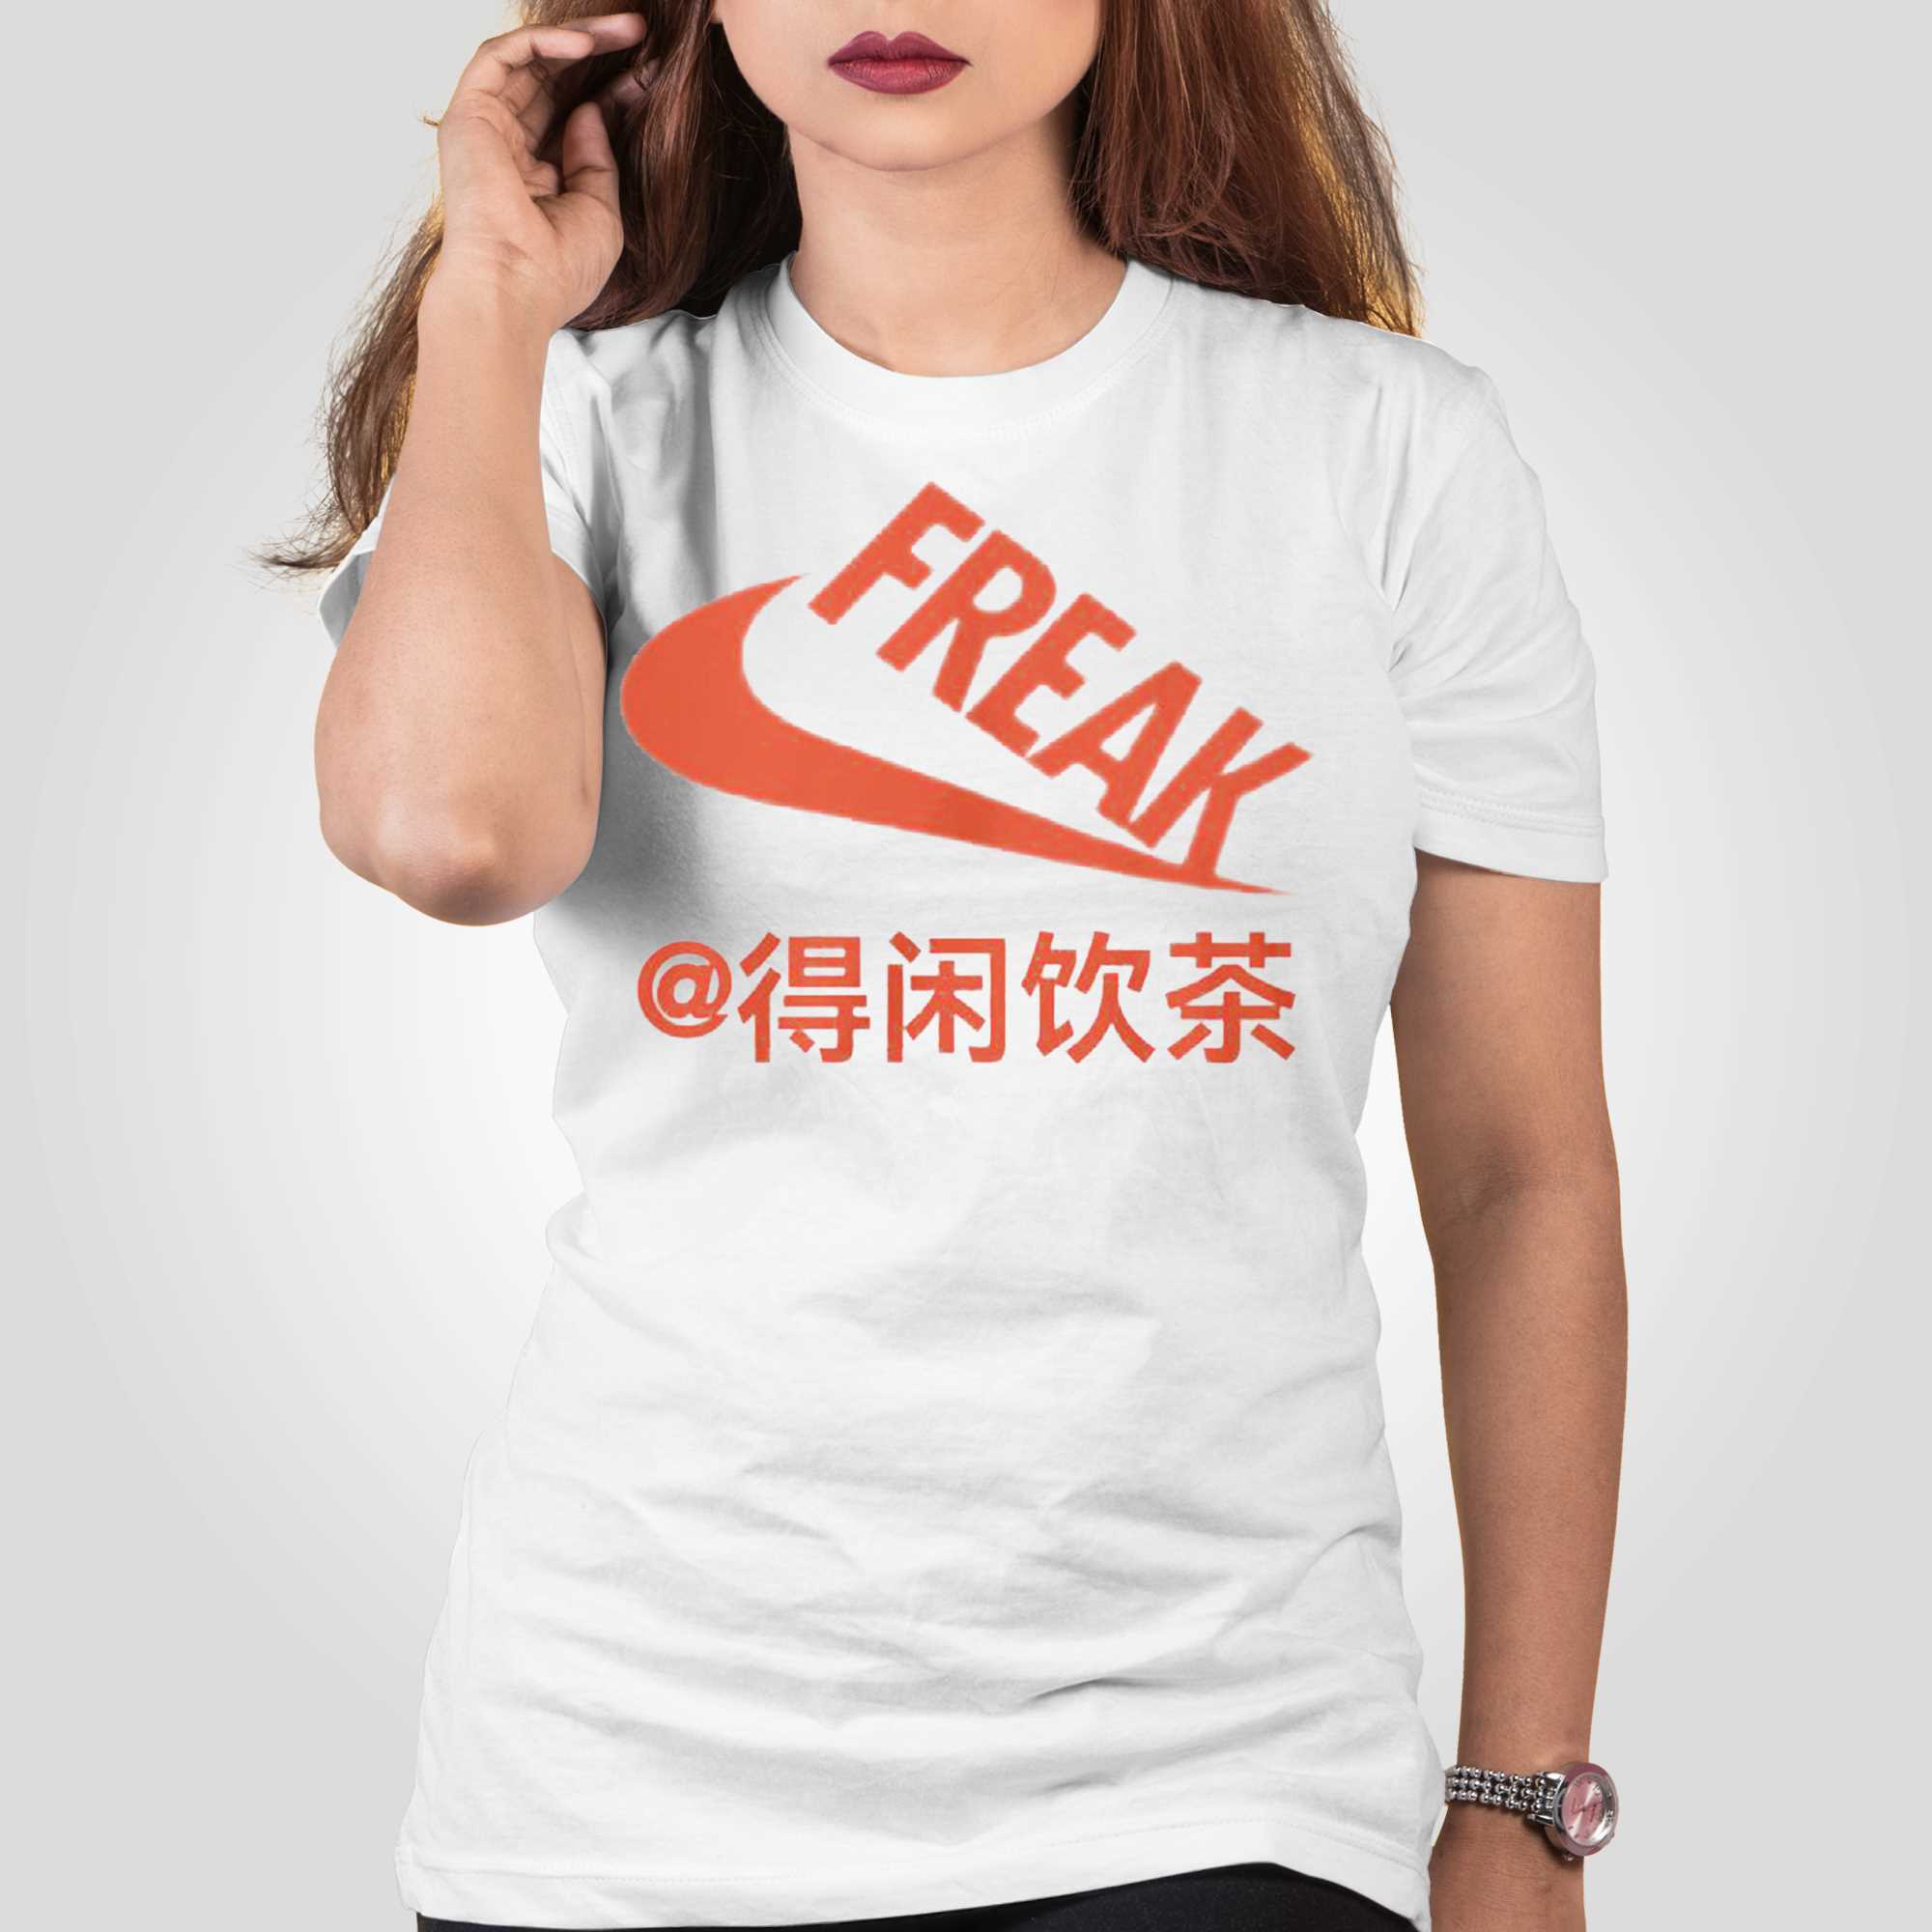 Giannis Antetokounmpo Freak T-shirt